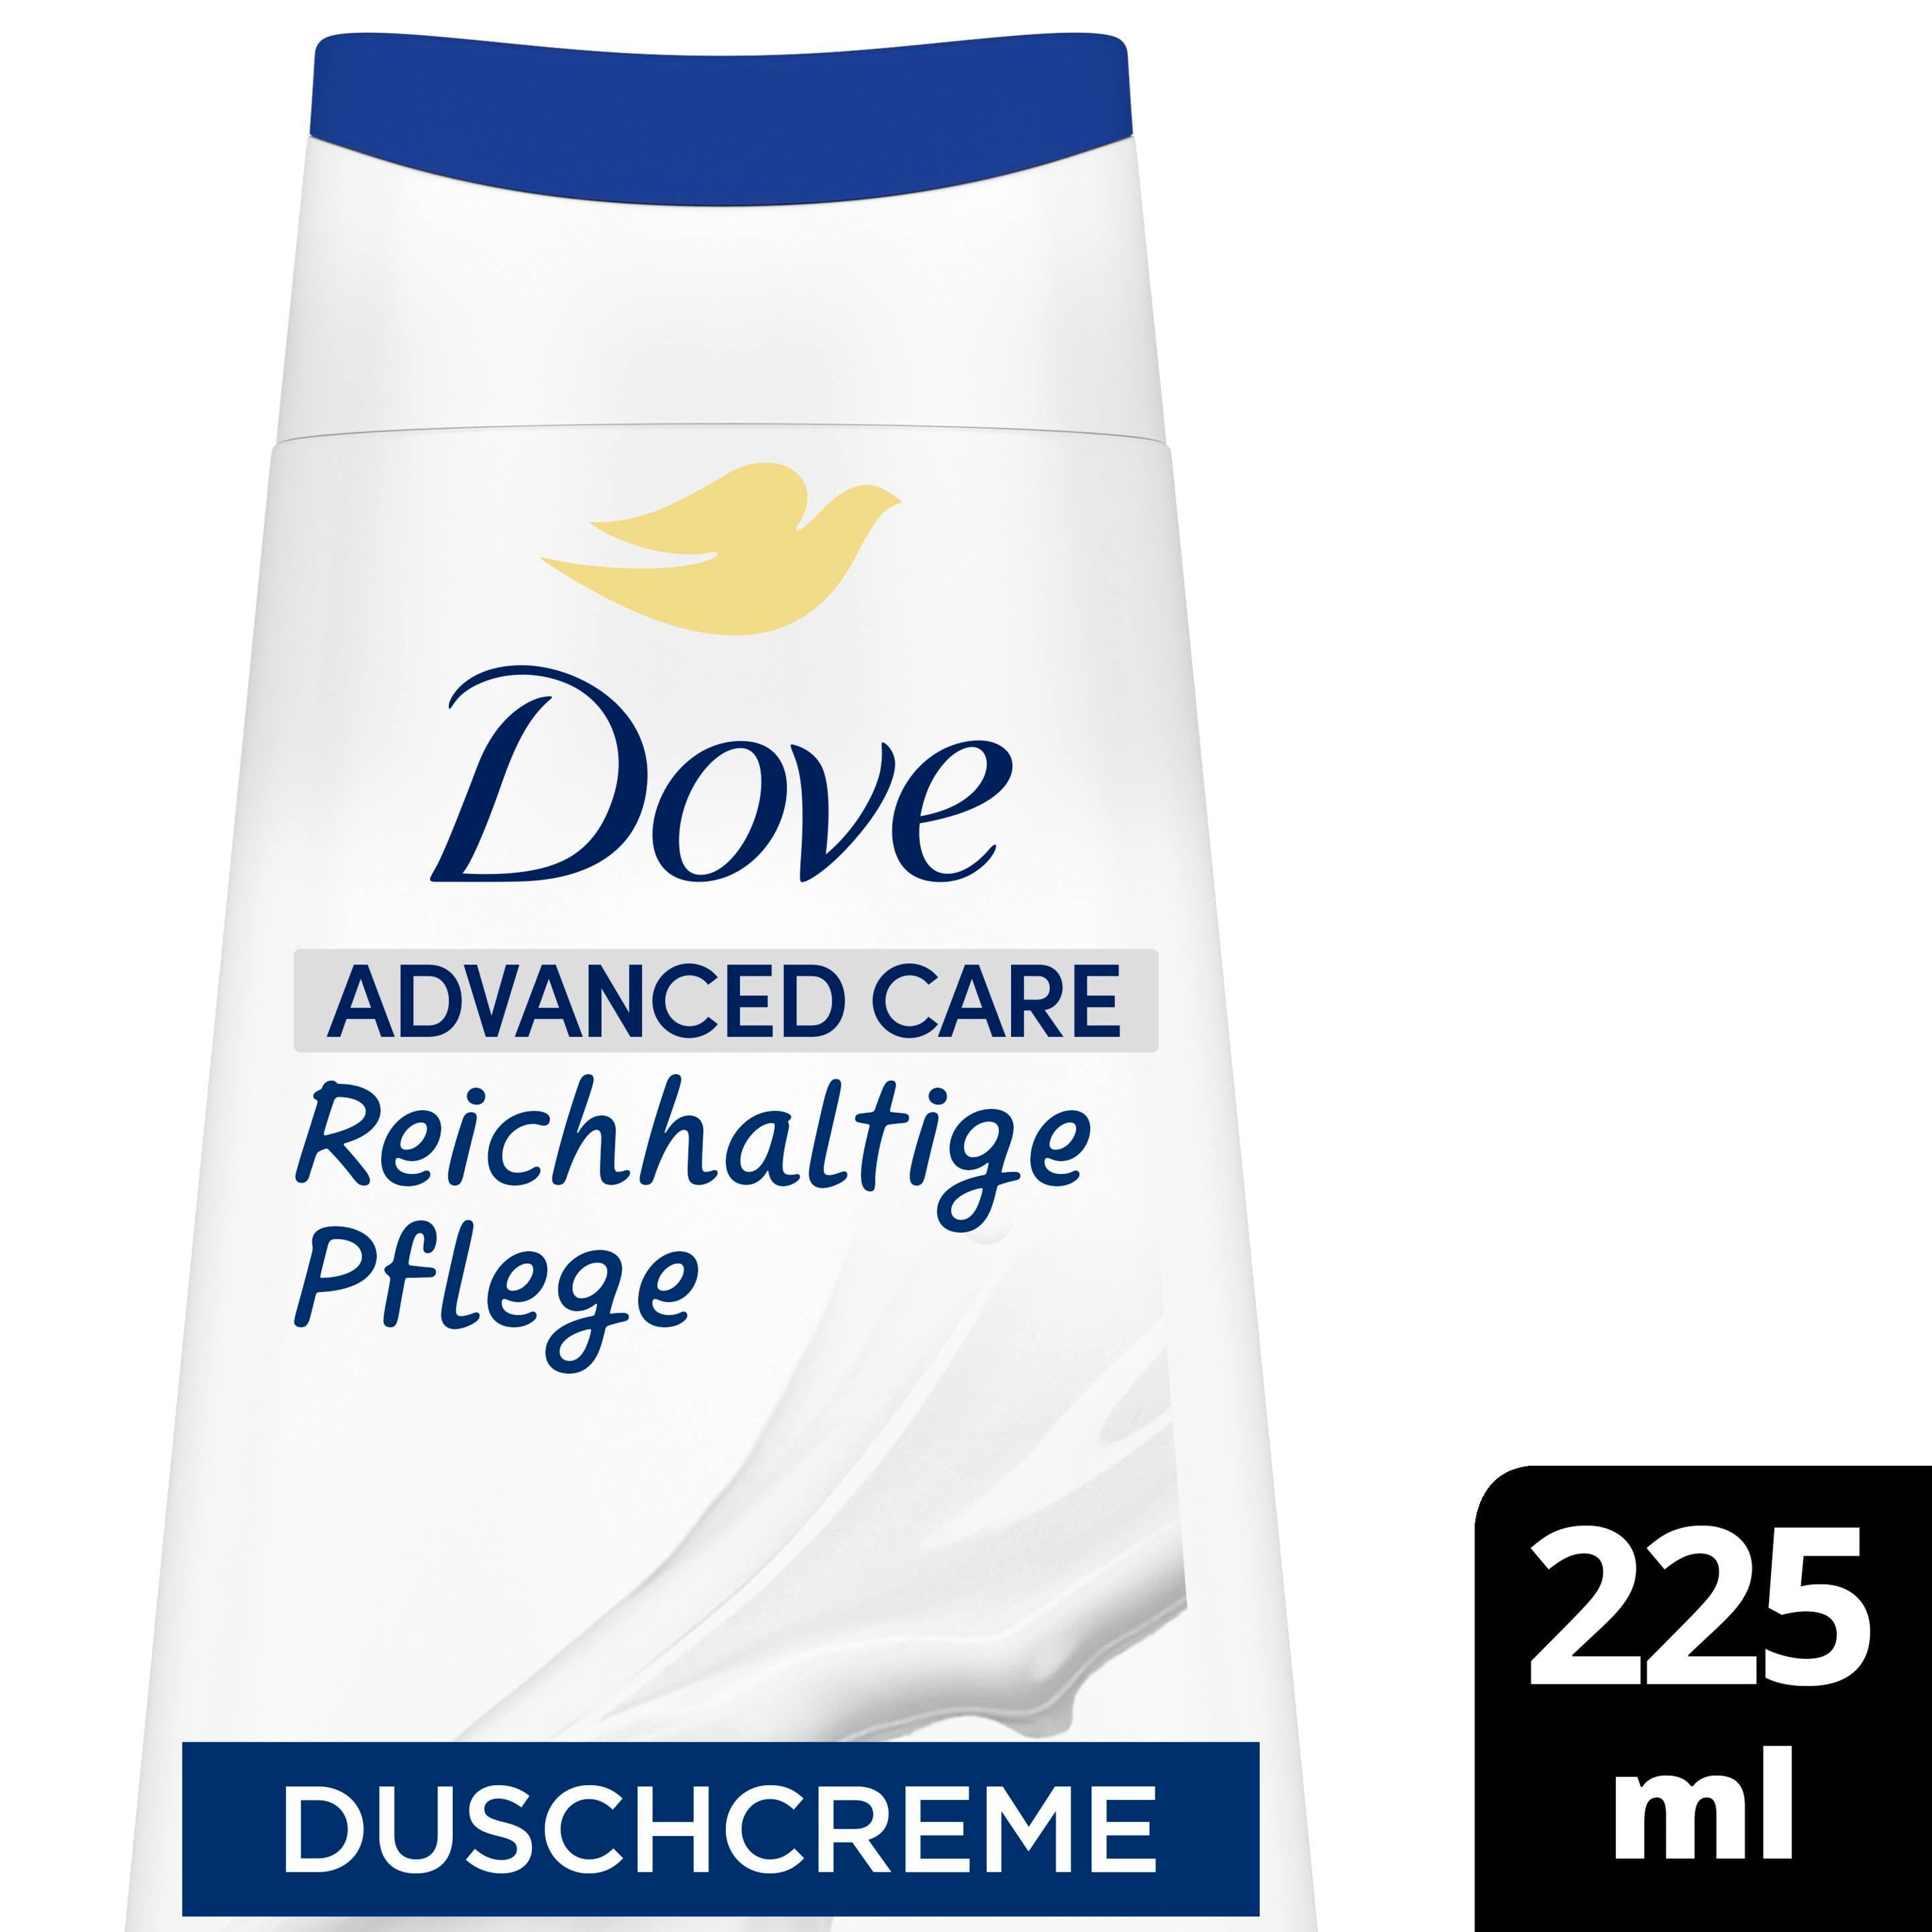 Dove Advanced Care Pflegedusche Reichhaltige Pflege 225 ml